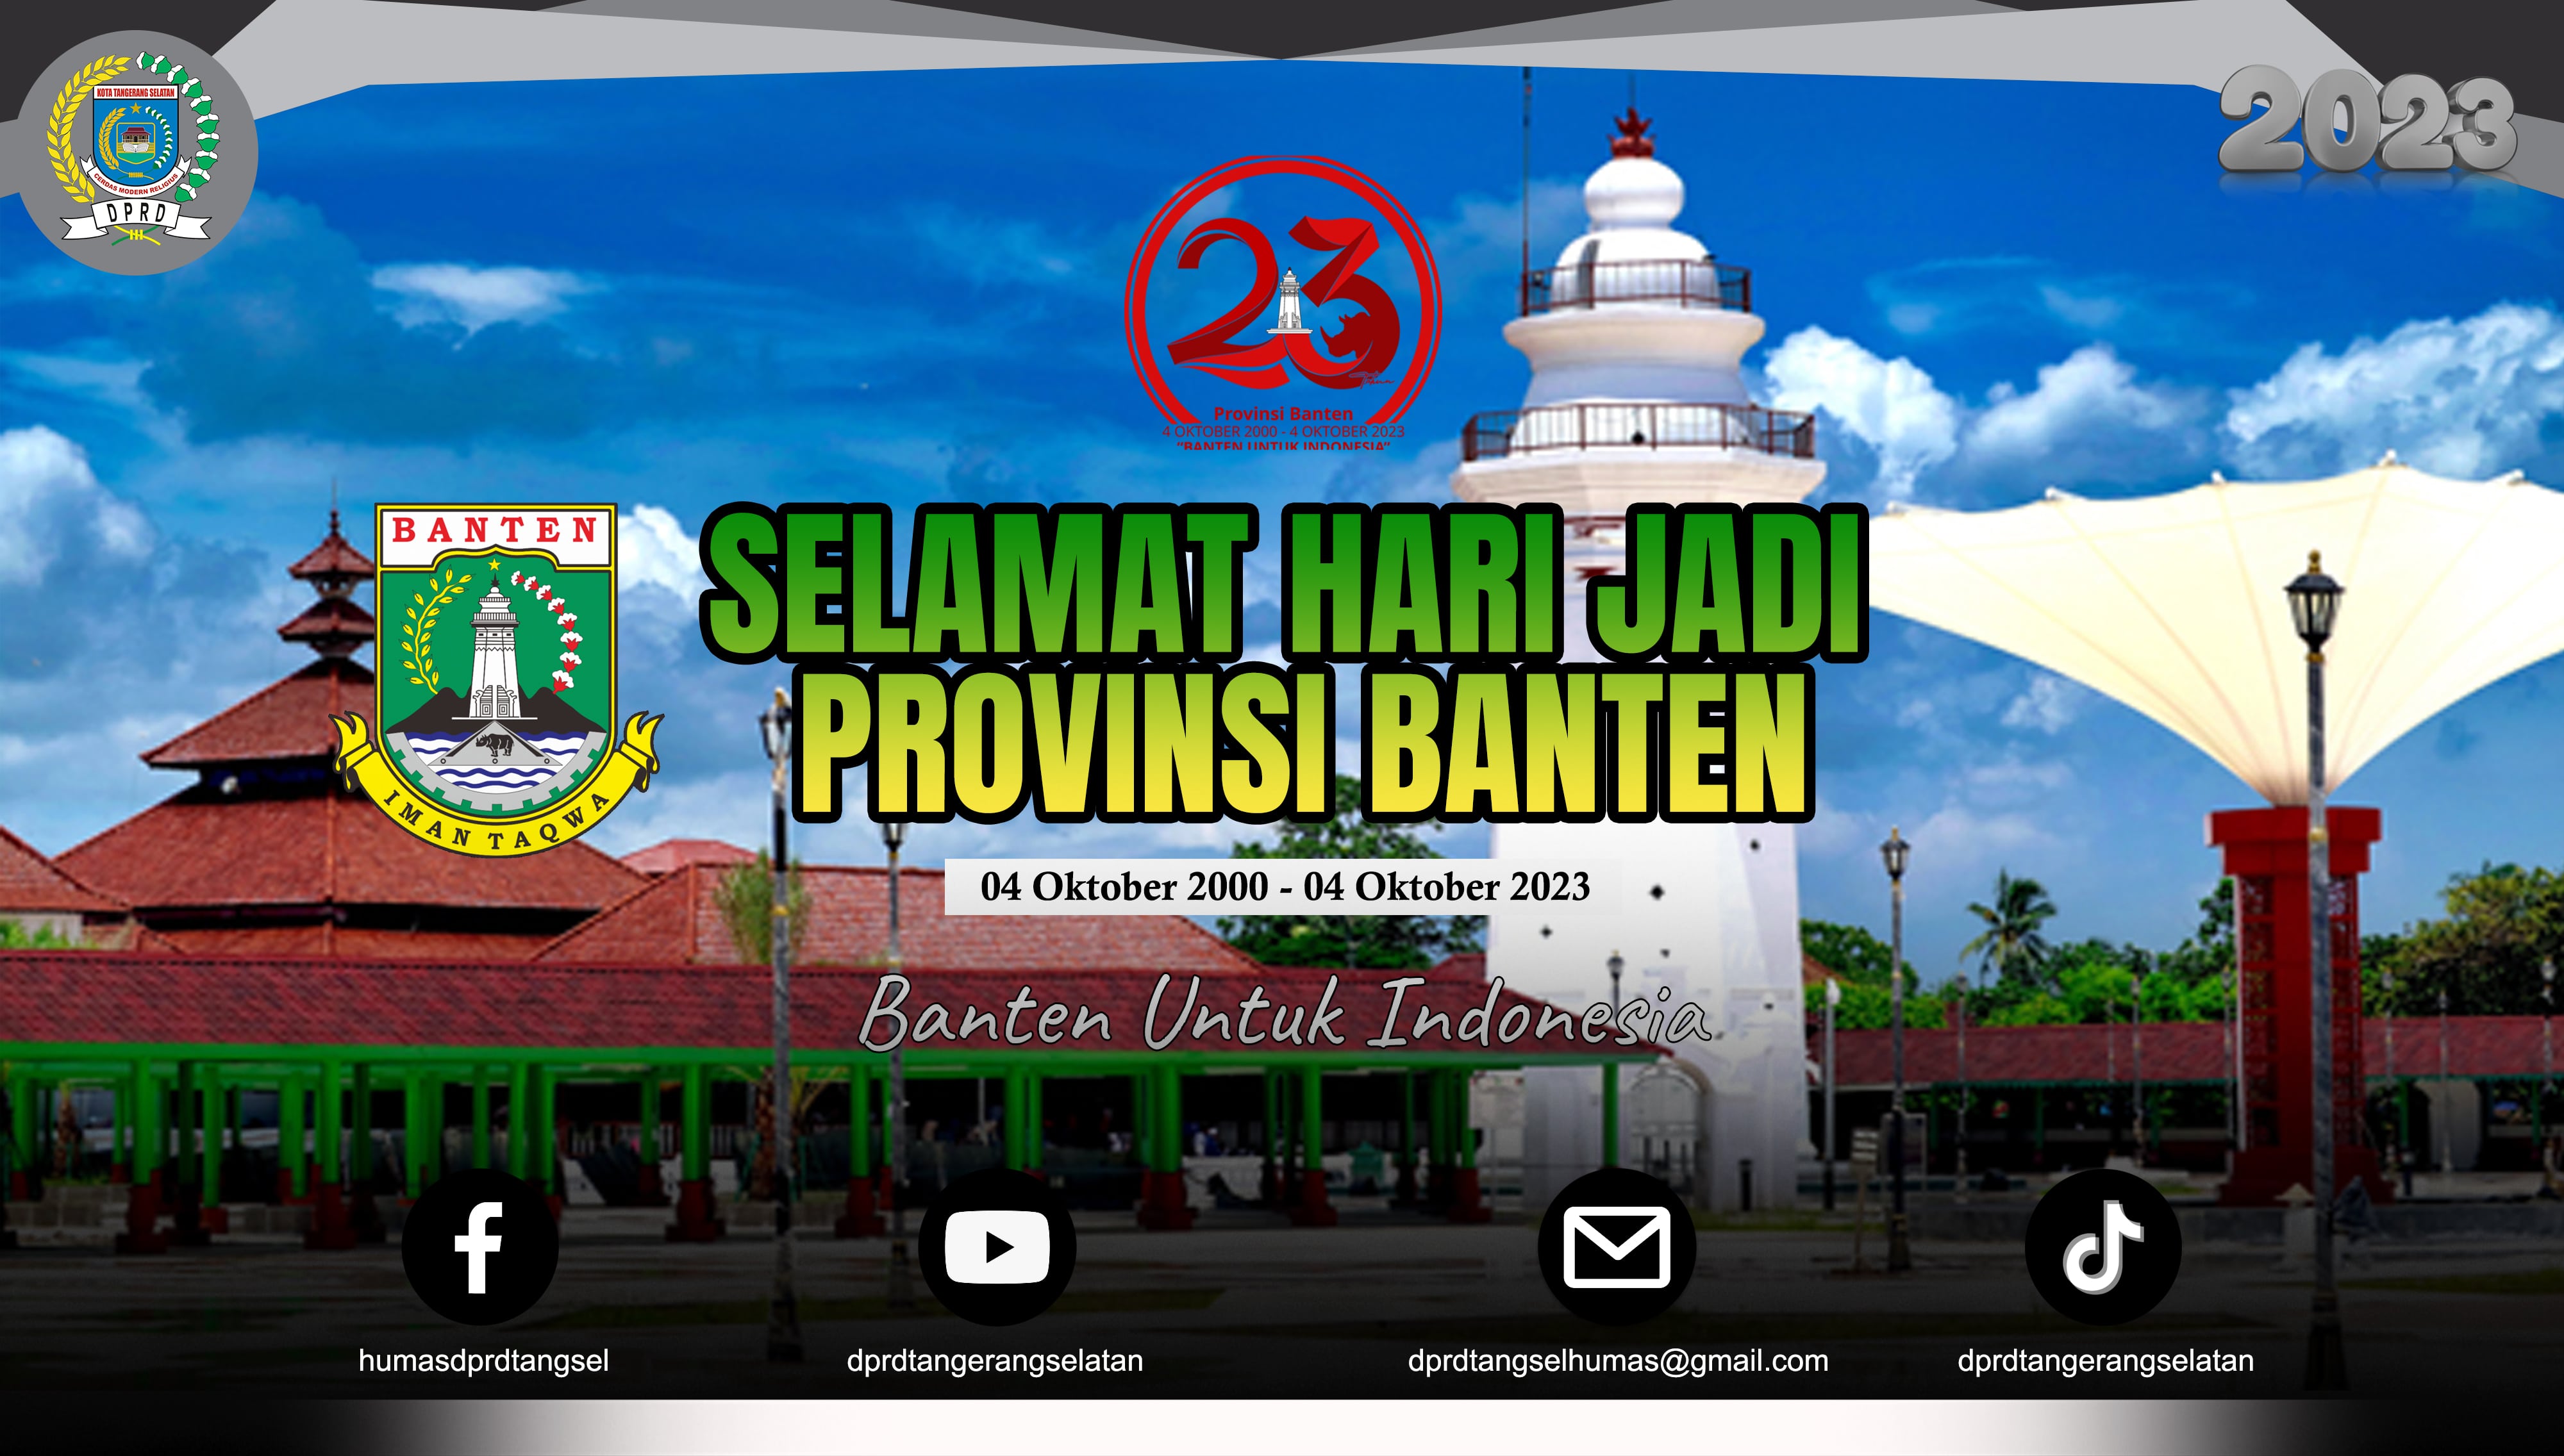 Selamat Hari Jadi Provinsi Banten ke-23. Banten untuk Indonesia